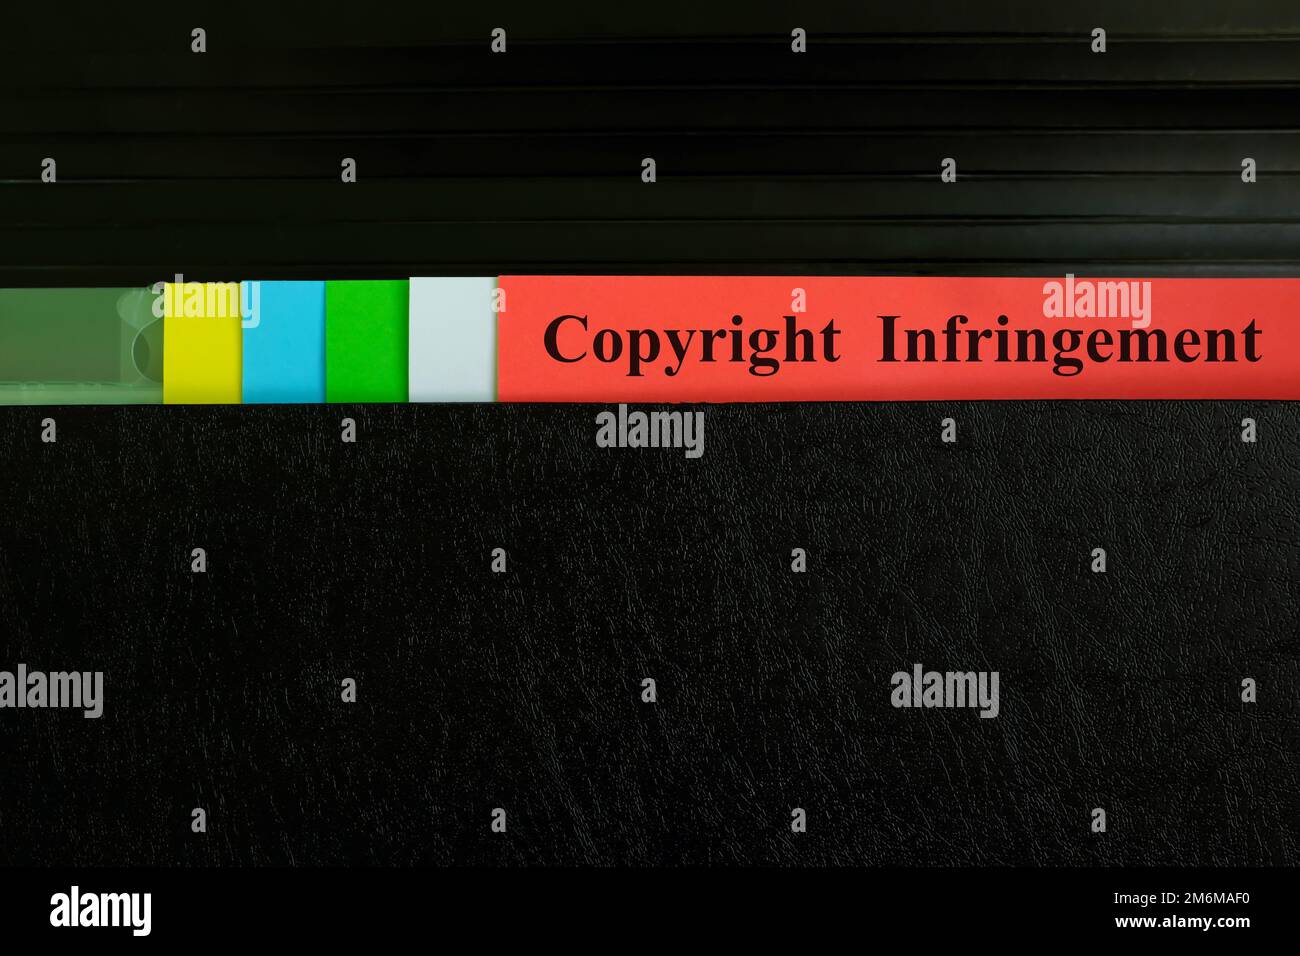 Manuelle Auswahl des Datensatzes für Urheberrechtsverletzungen im schwarzen Ordner. Rechtsbegriff für Urheberrechtsverletzungen. Stockfoto